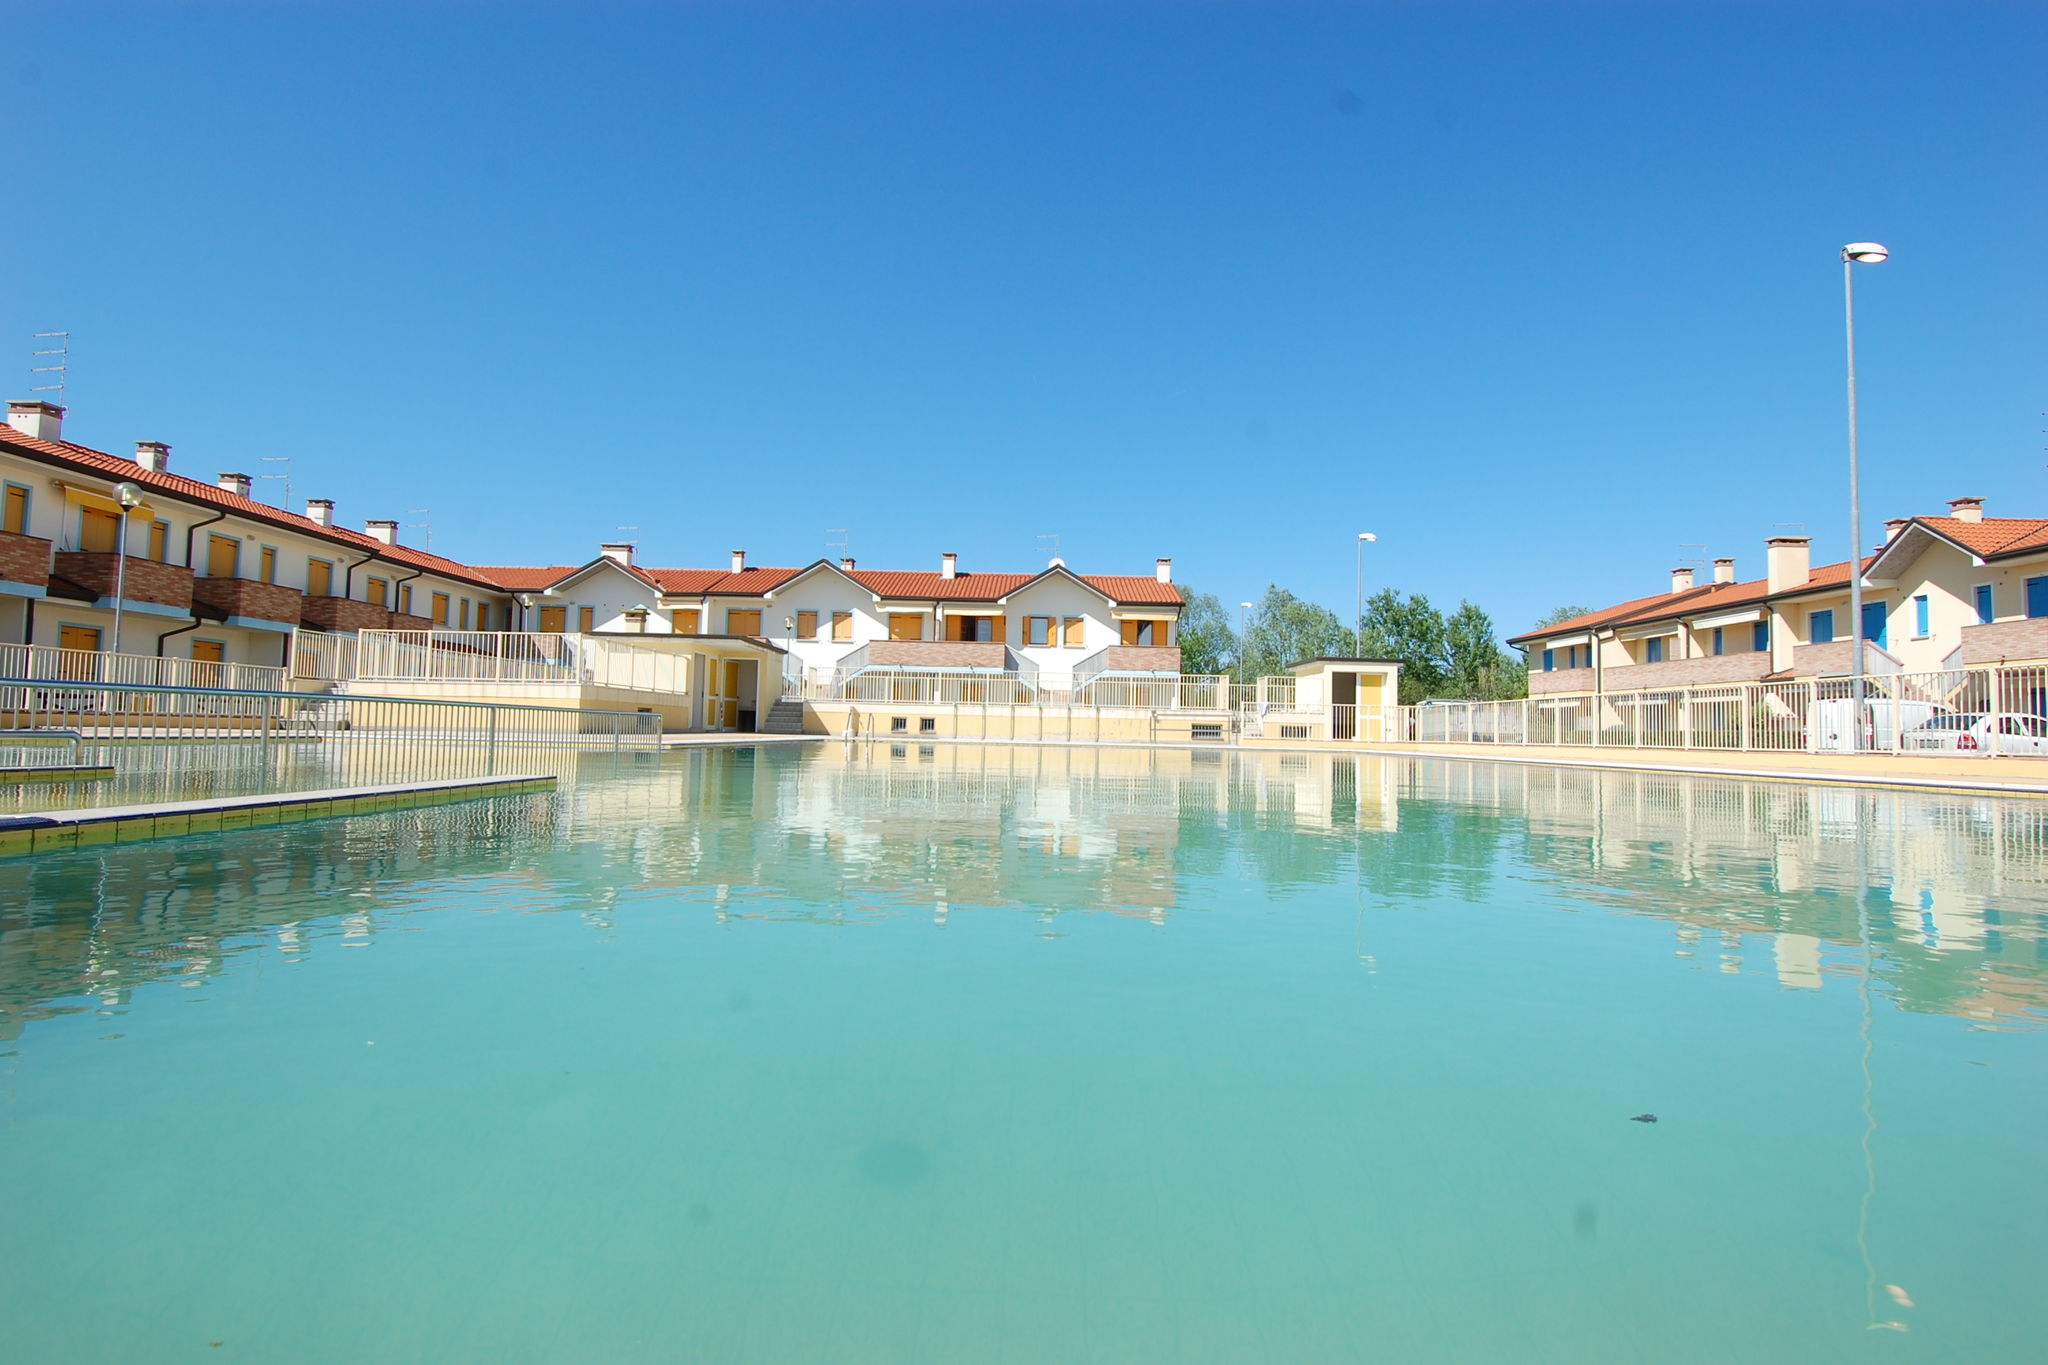 Appartements de vacances anciens près de Venise avec piscine